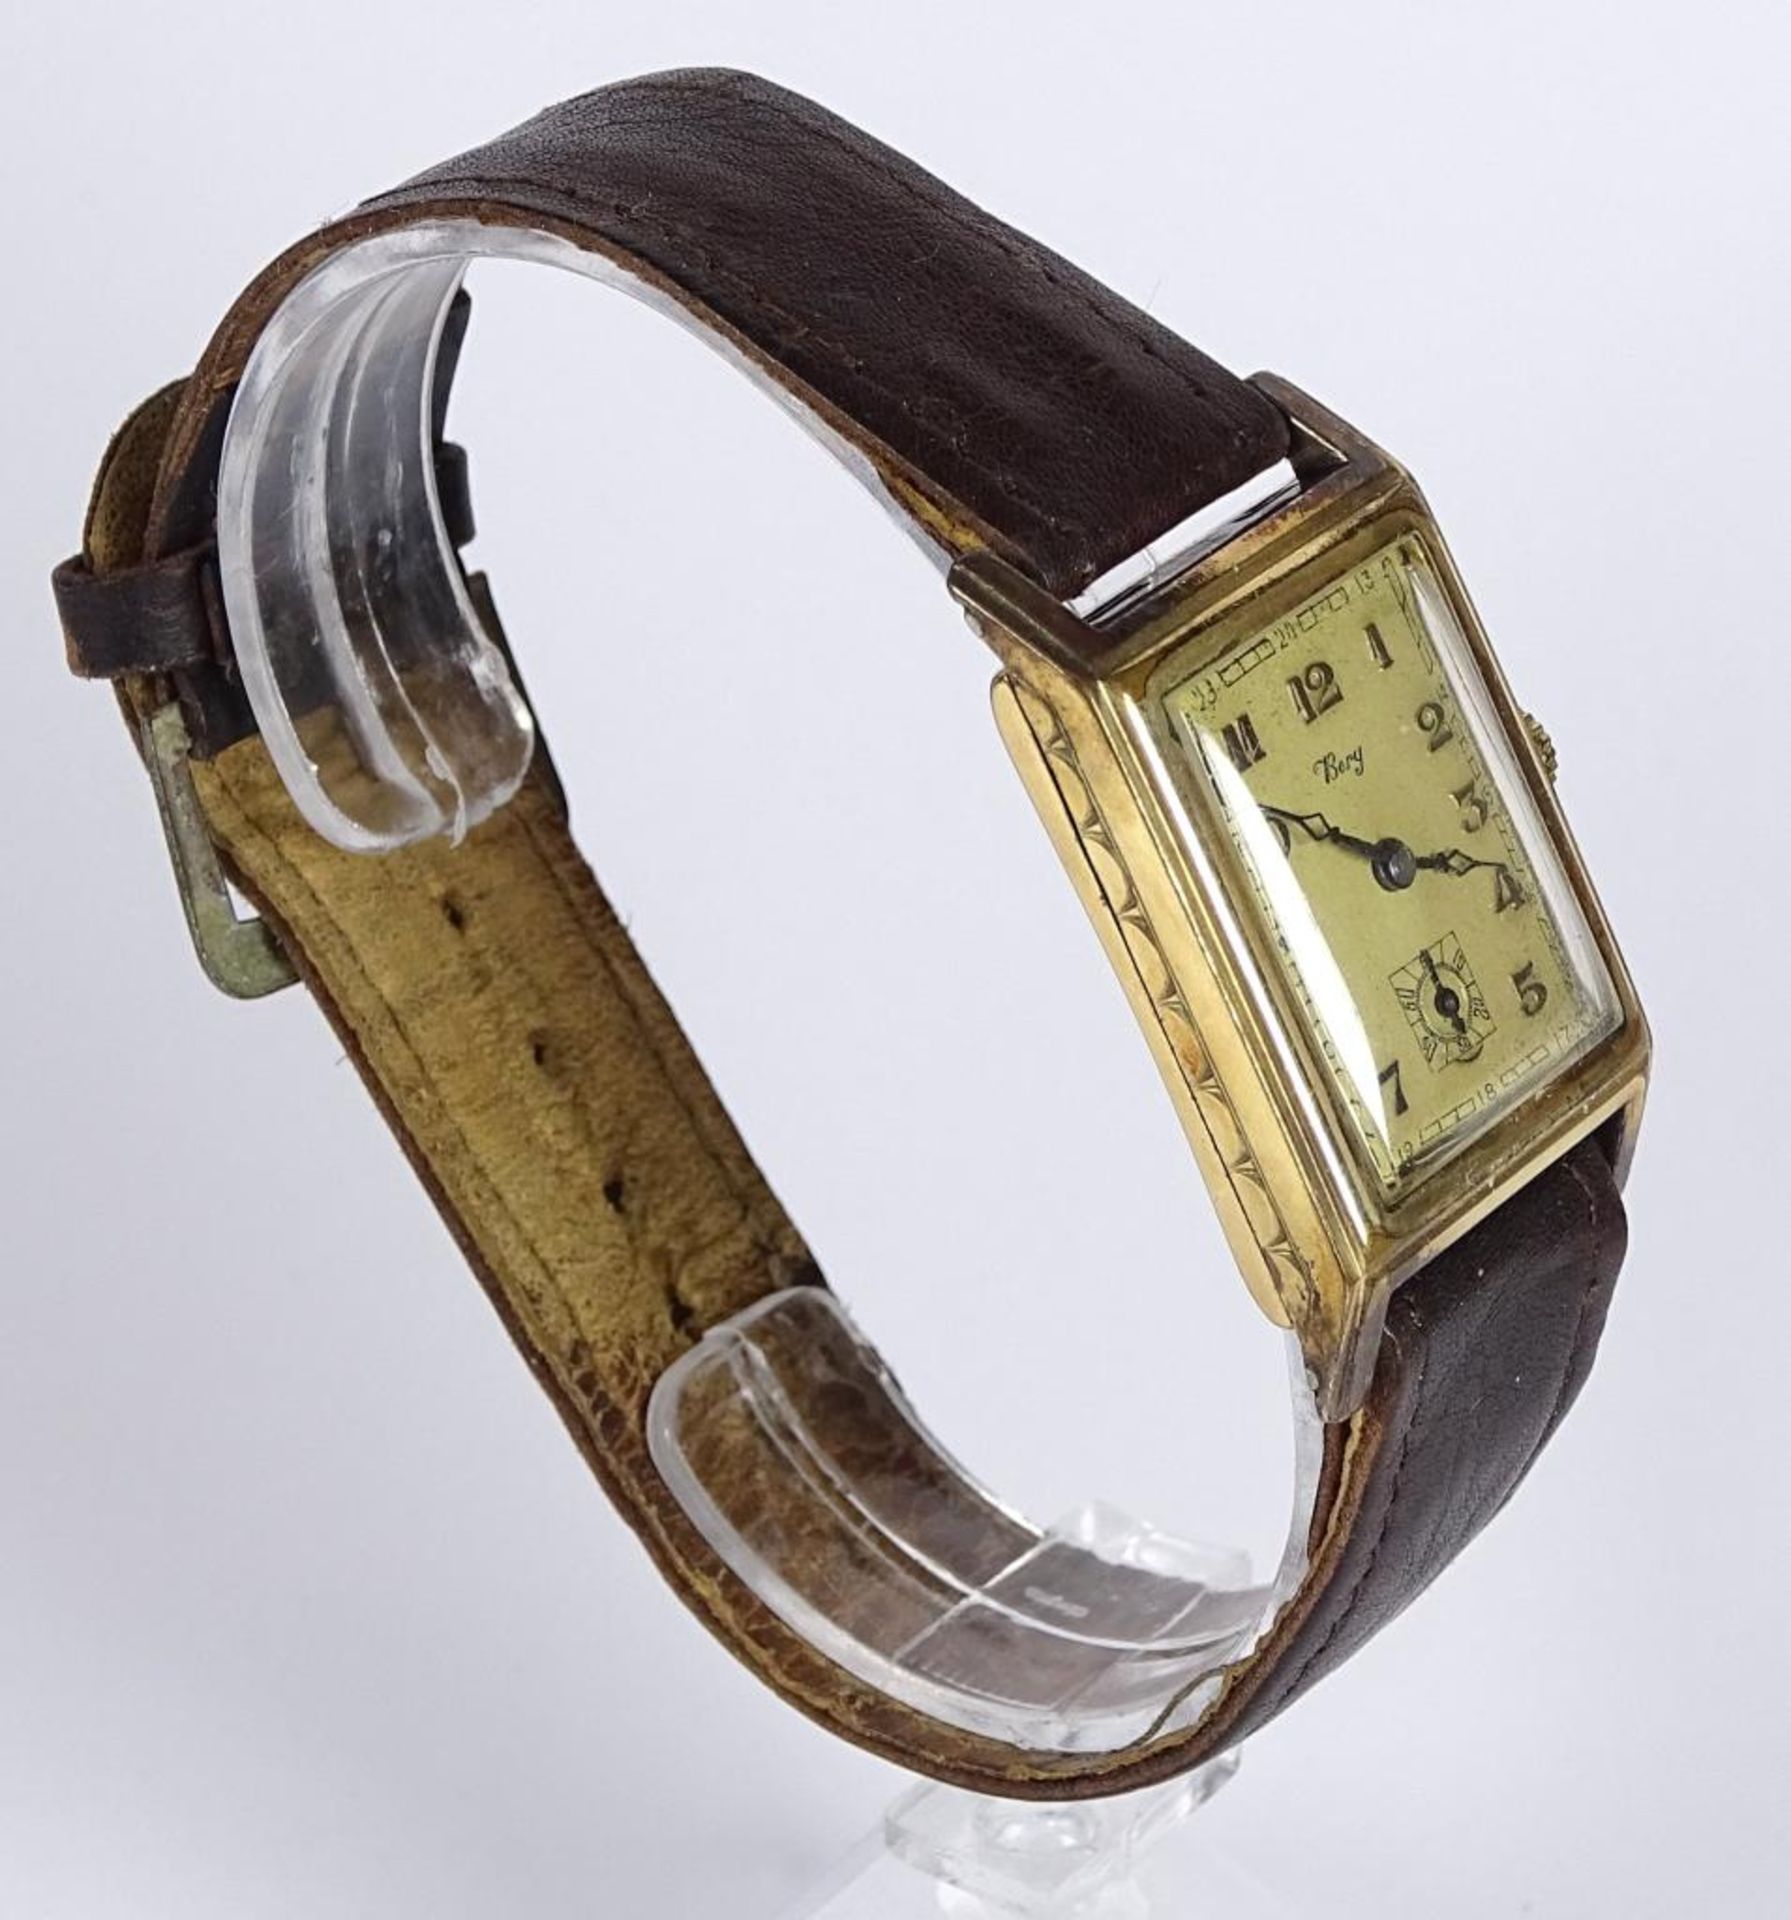 Armbanduhr "Berg",Handaufzug,Werk steht,vergoldet,Gehäuse 25x30mm,Alters-u. Gebrauchsspure - Bild 3 aus 4